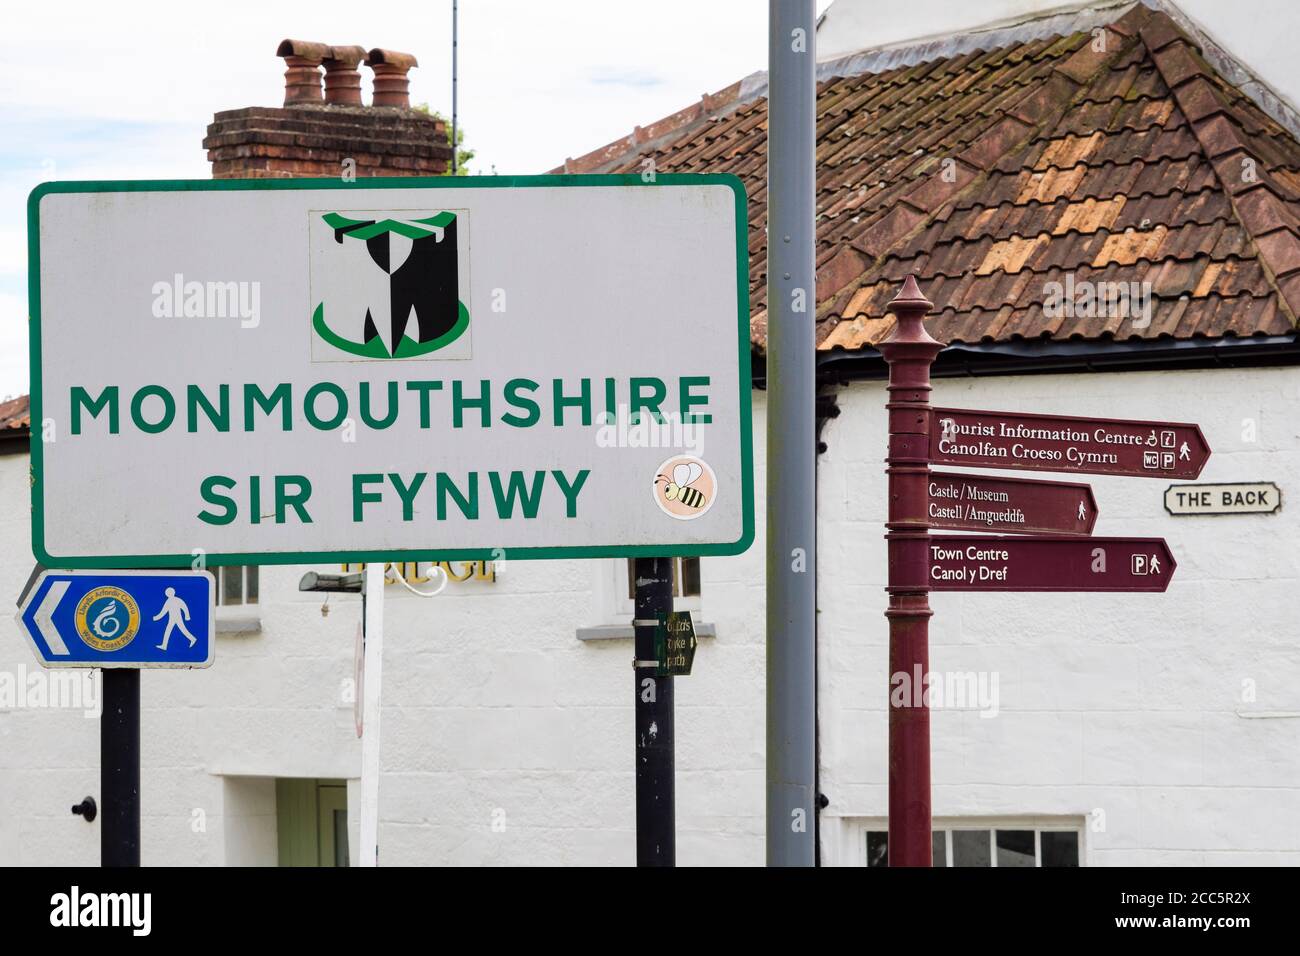 Nome confine della contea bilingue in inglese e gallese. Chepstow, Monhuthshire / Sir Fynwy, Galles, Regno Unito, Gran Bretagna Foto Stock